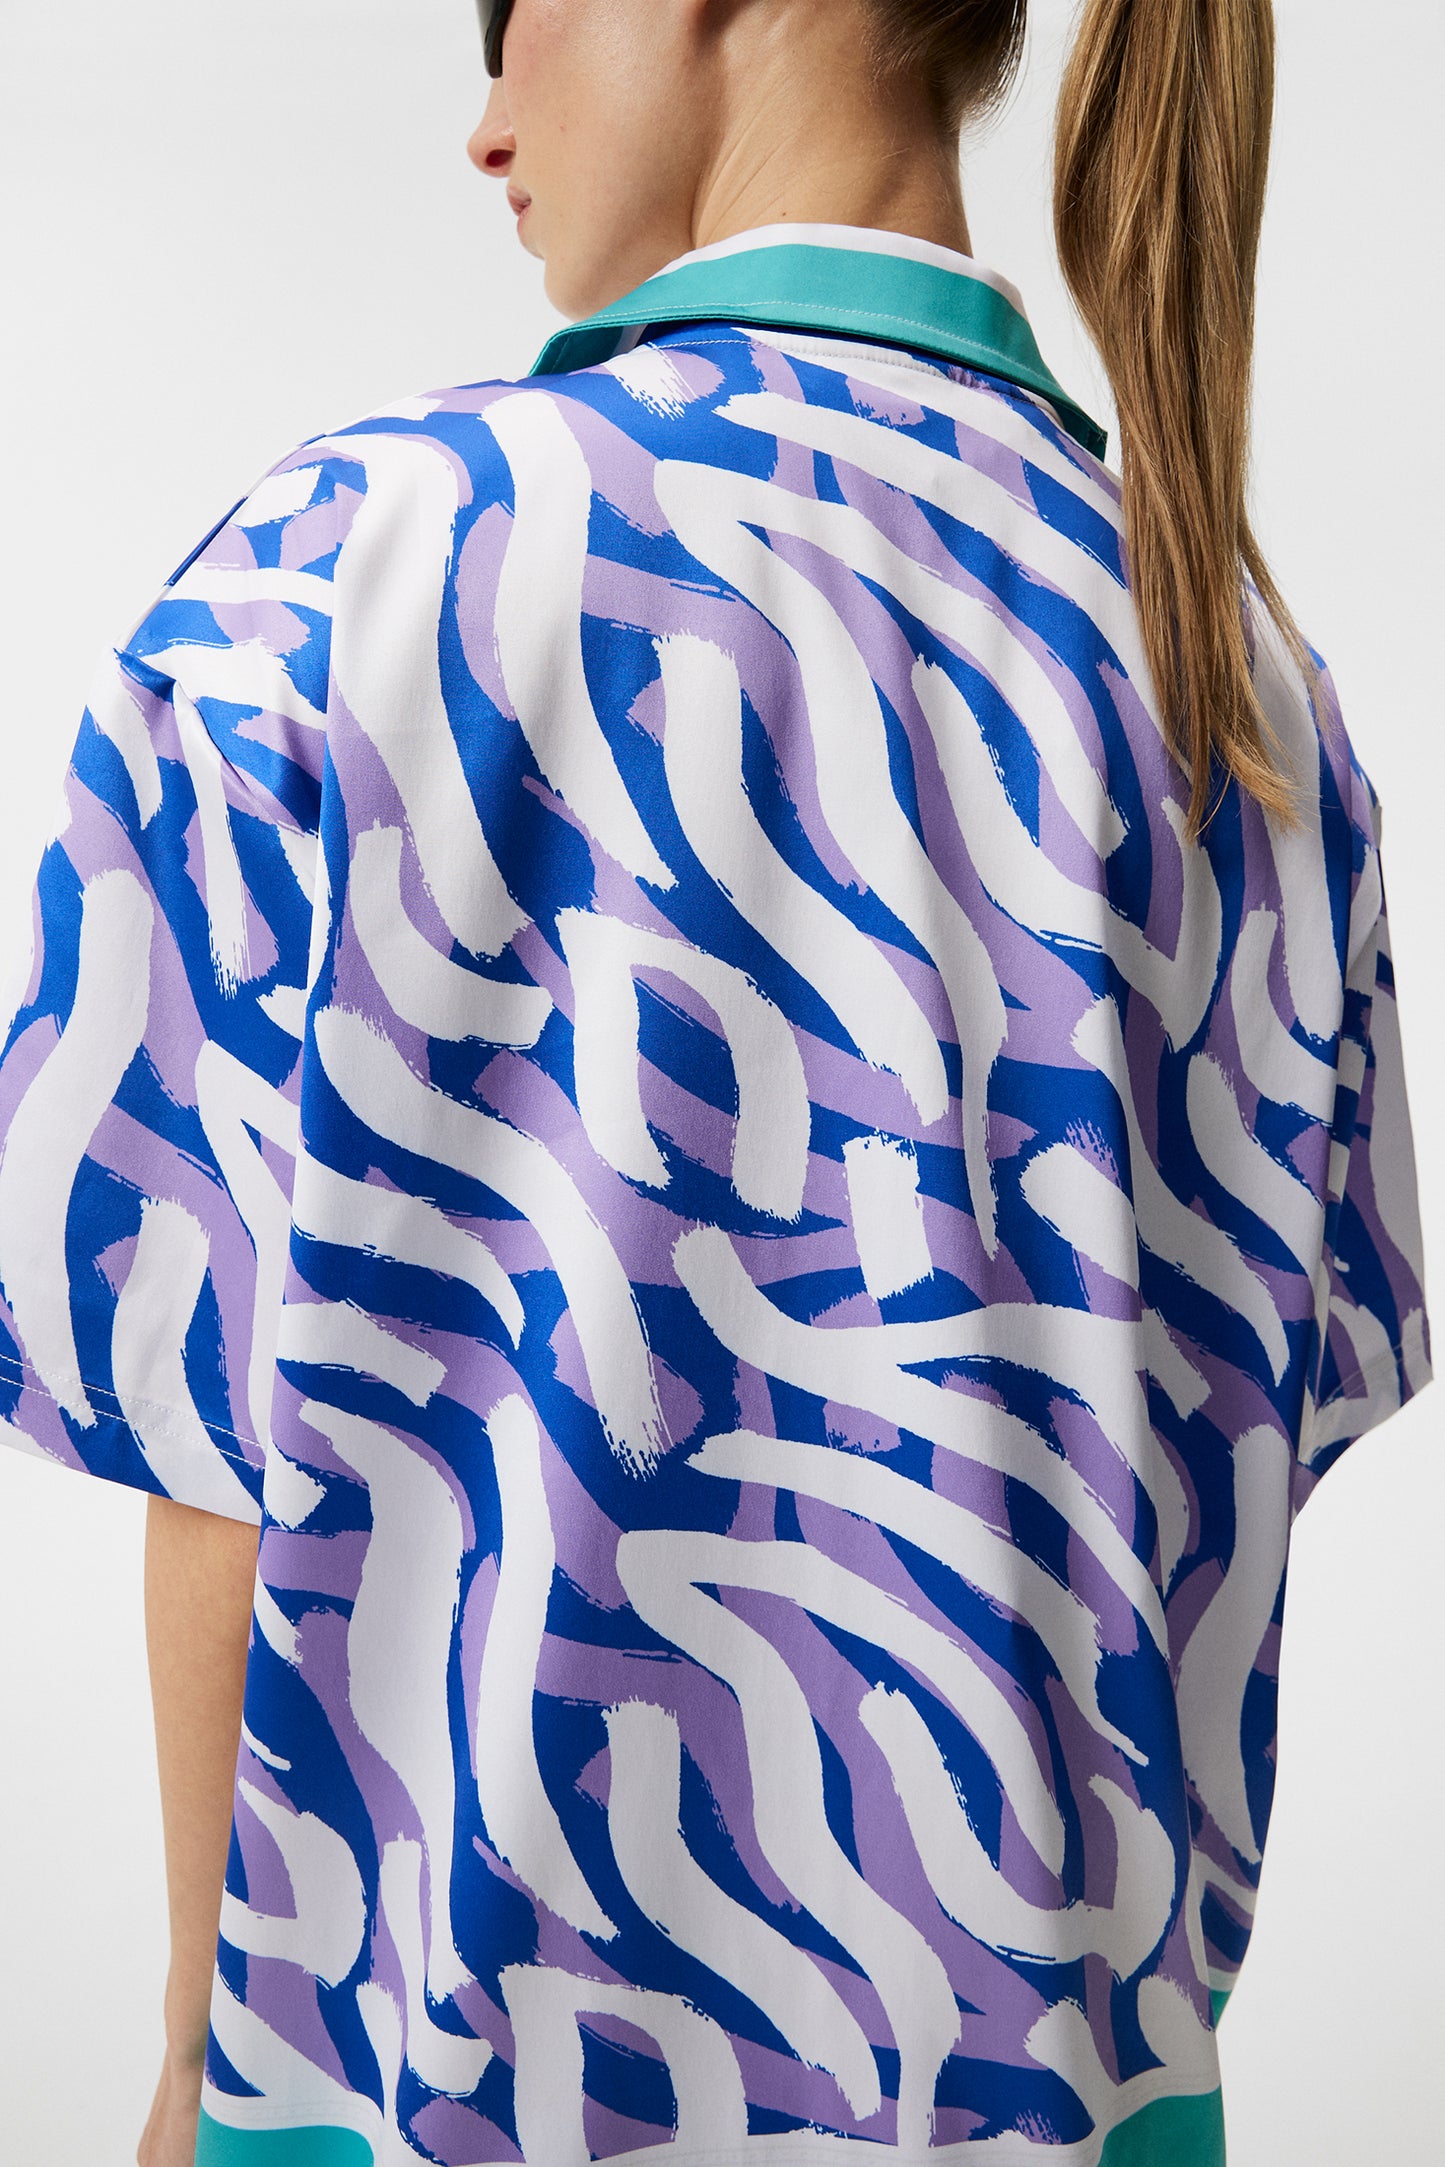 Bay Shirt / purple painted zebra